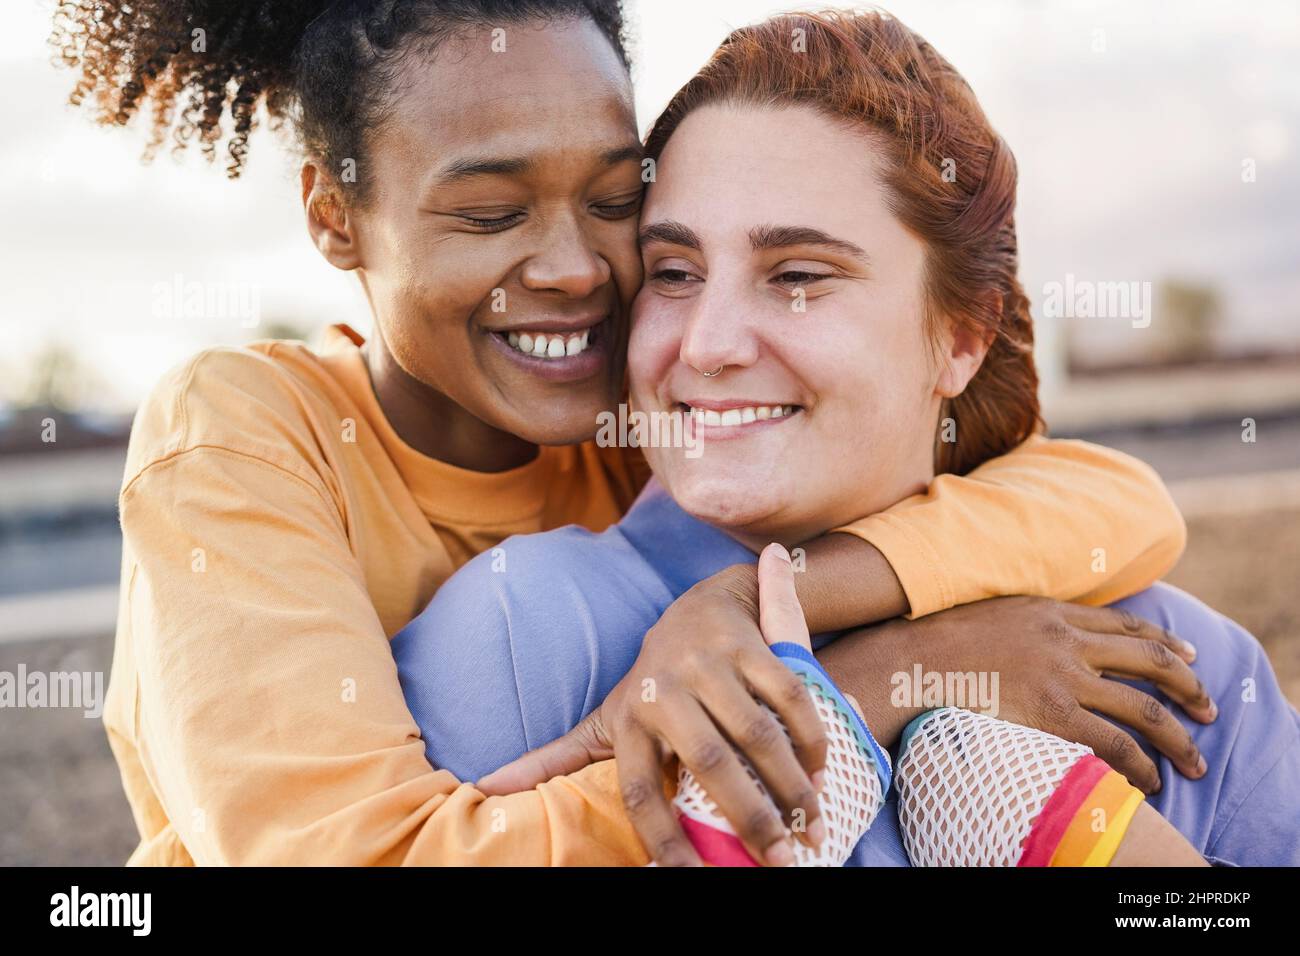 Glückliche Frauen Homosexuell Paar mit zarten Moment im Freien - LGBT und Liebe Konzept Stockfoto